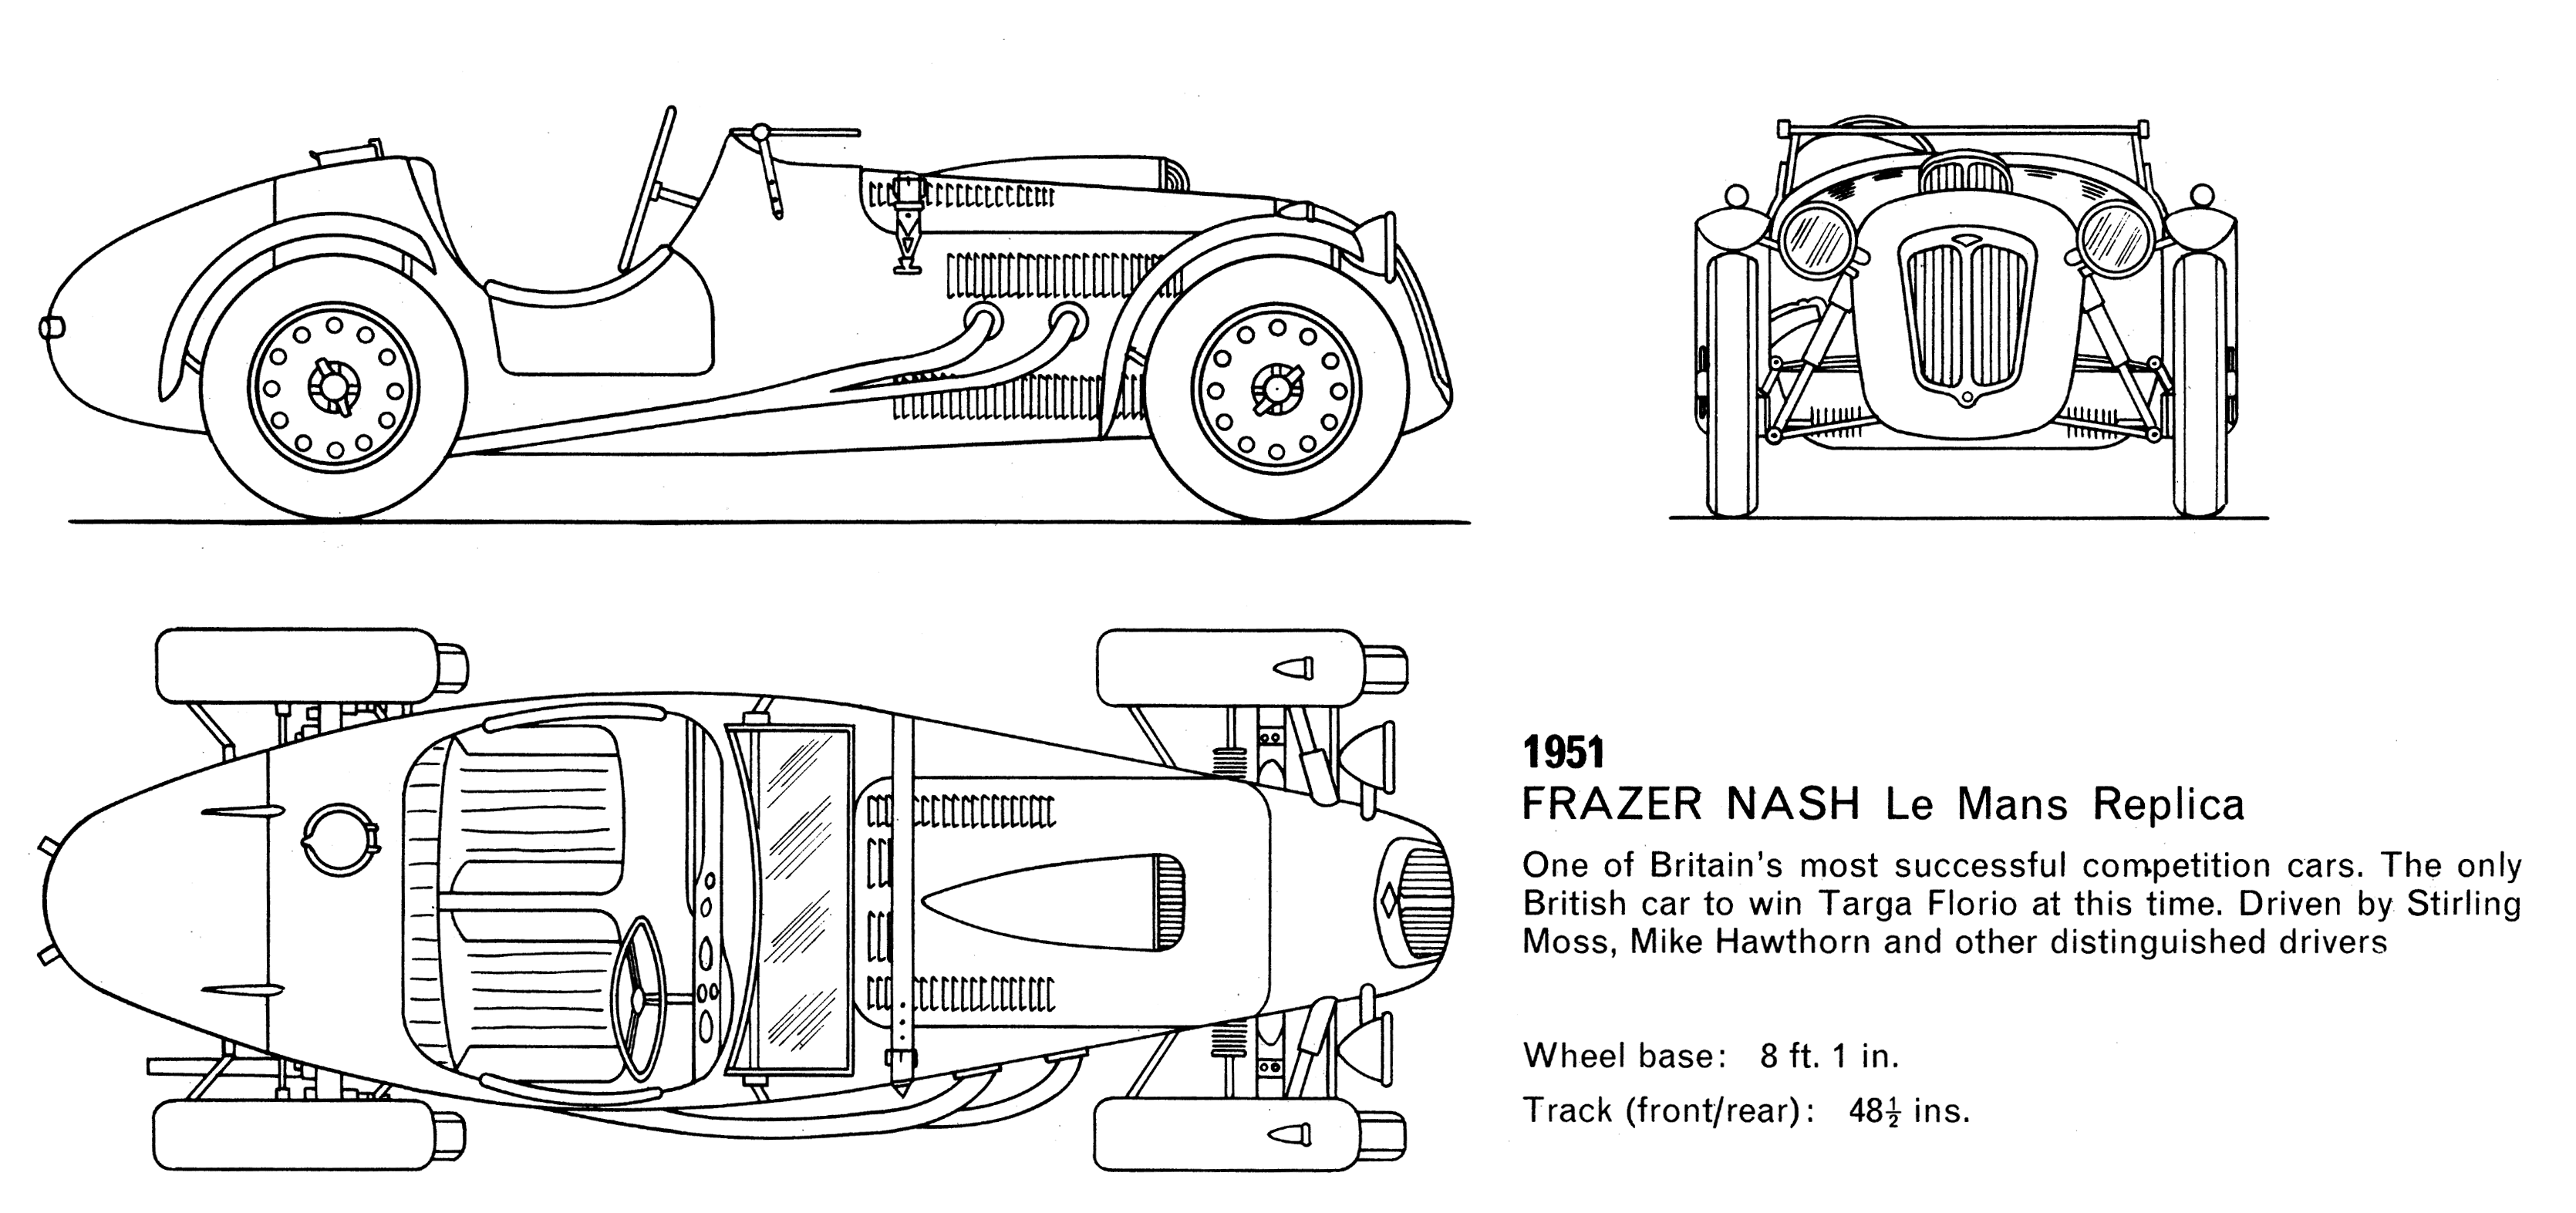 Frazer Nash Le Mans Replica (